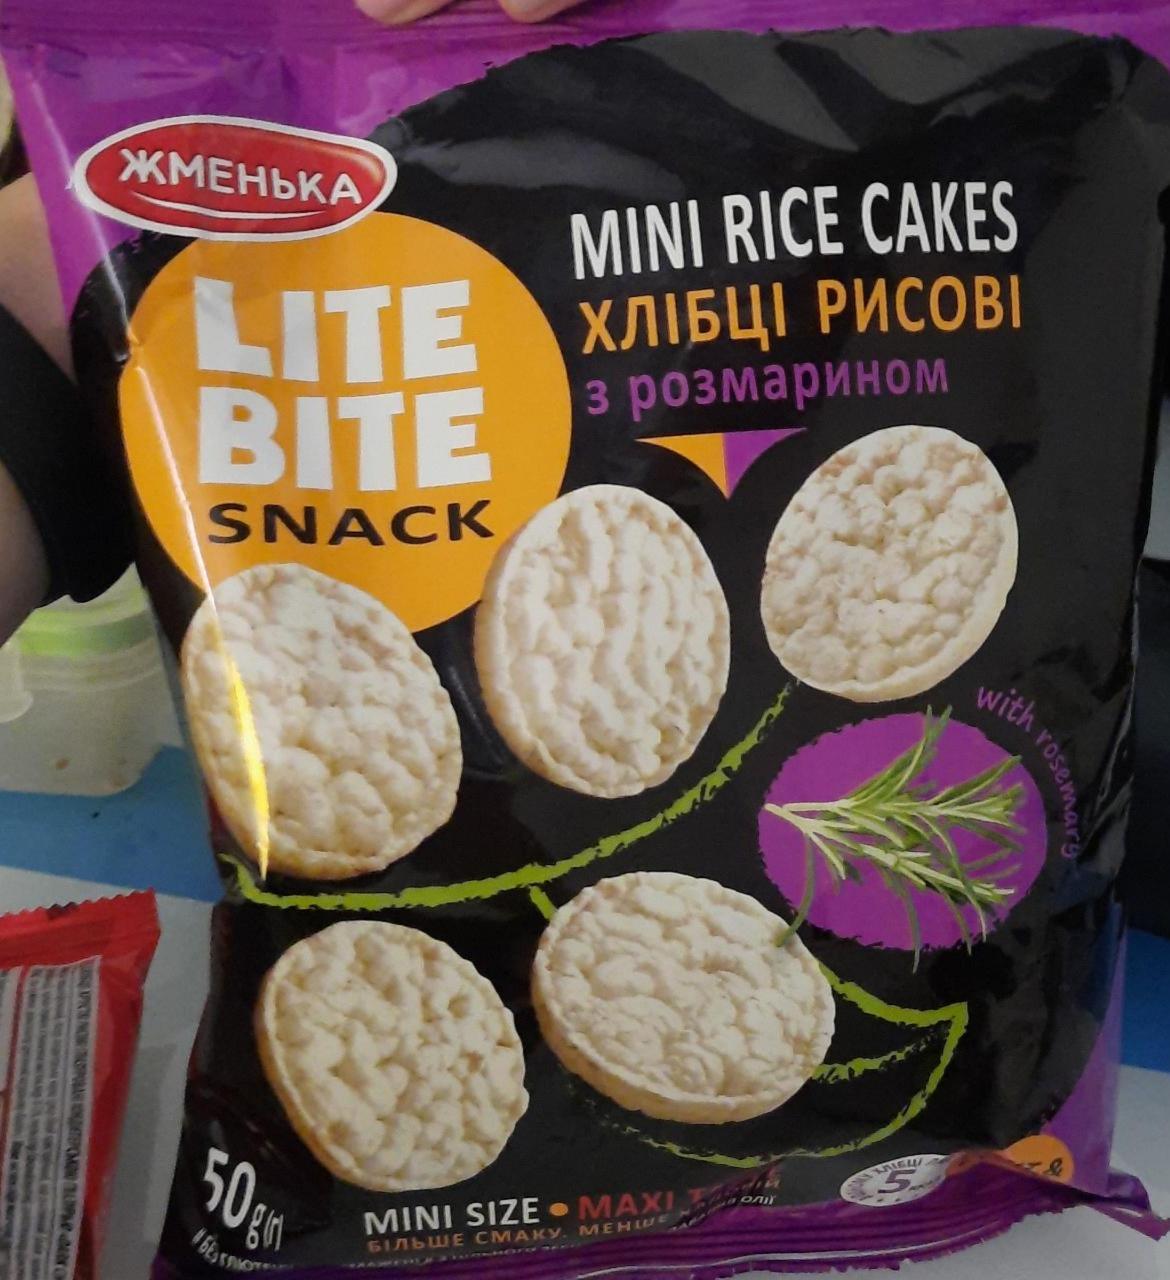 Фото - Хлібці Lite Bite Snack рисові з розмарином Жменька